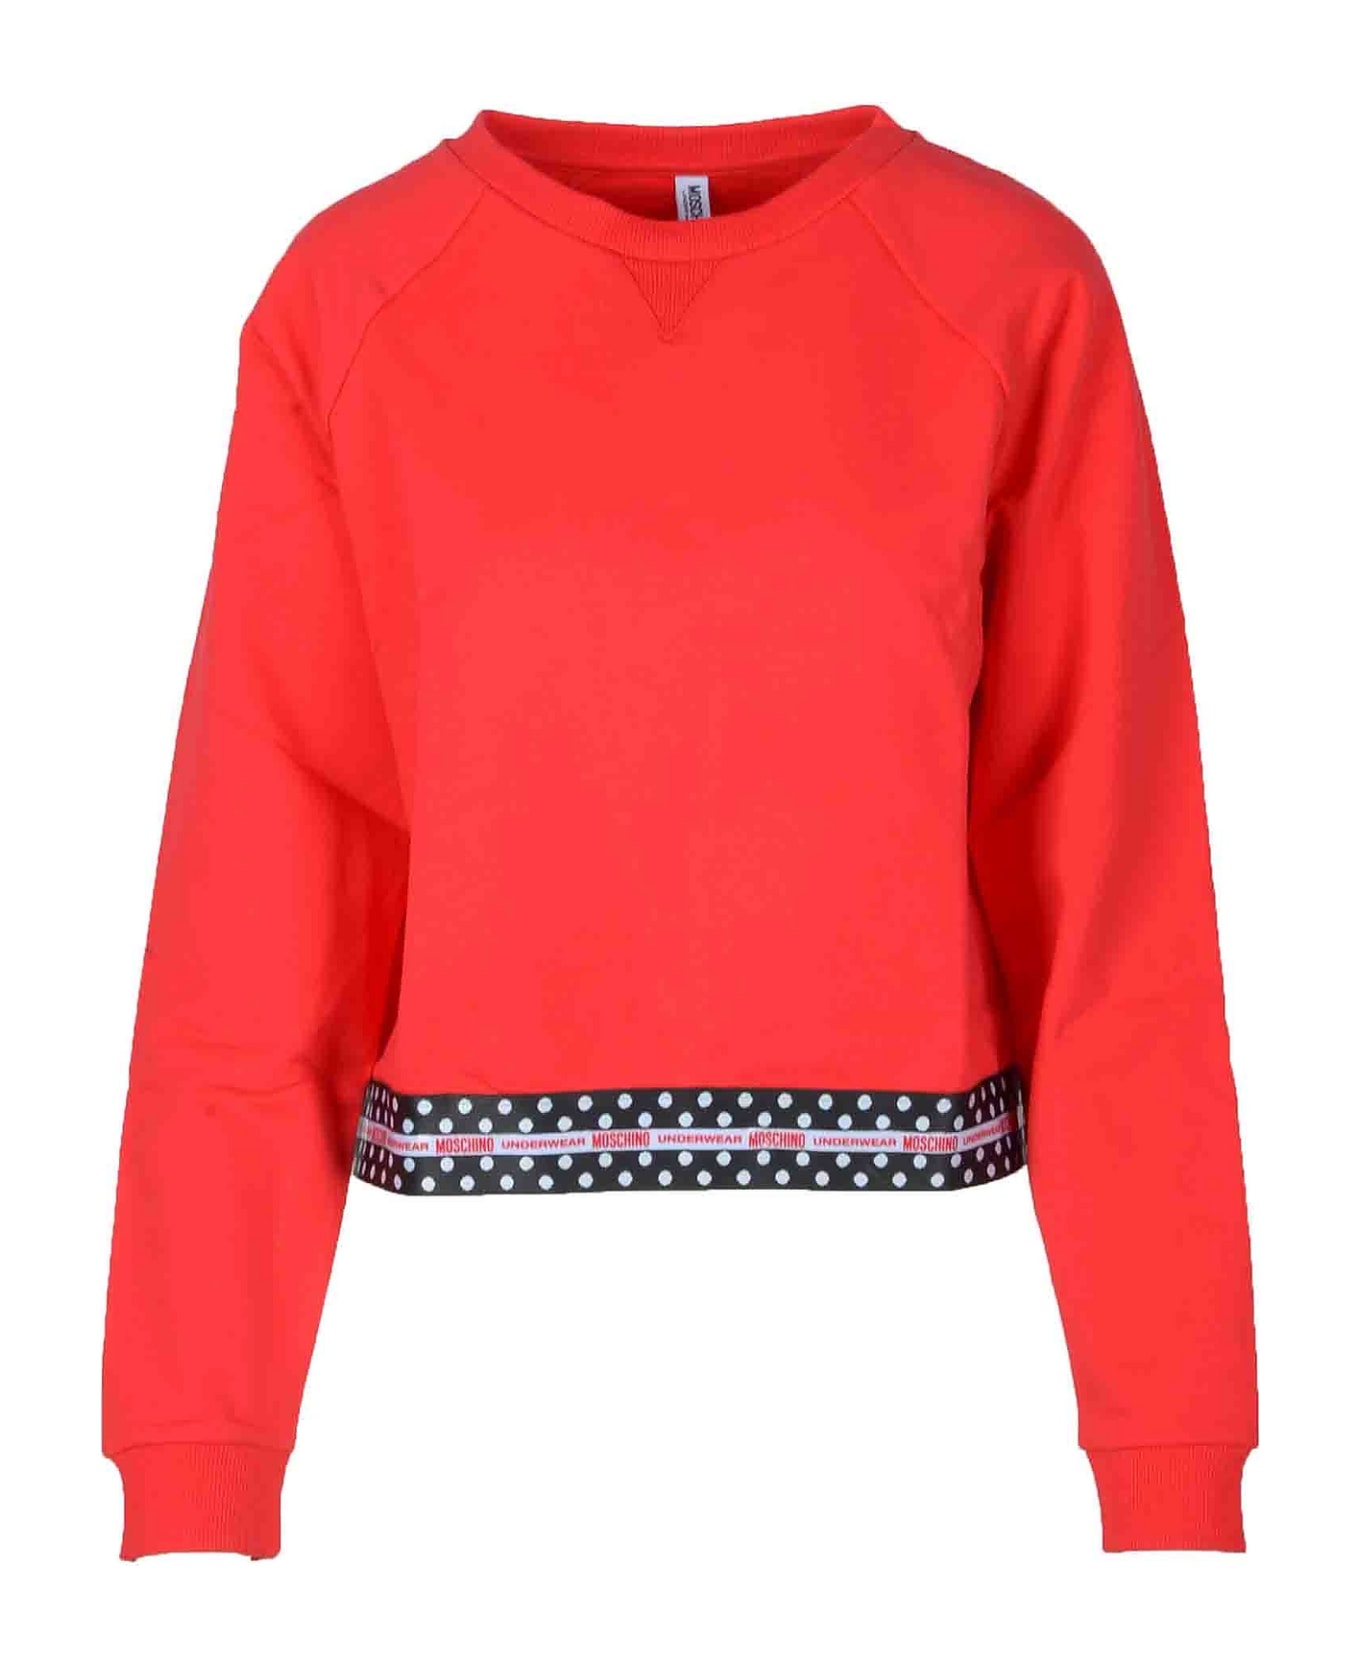 Moschino Women's Red Sweatshirt - Red